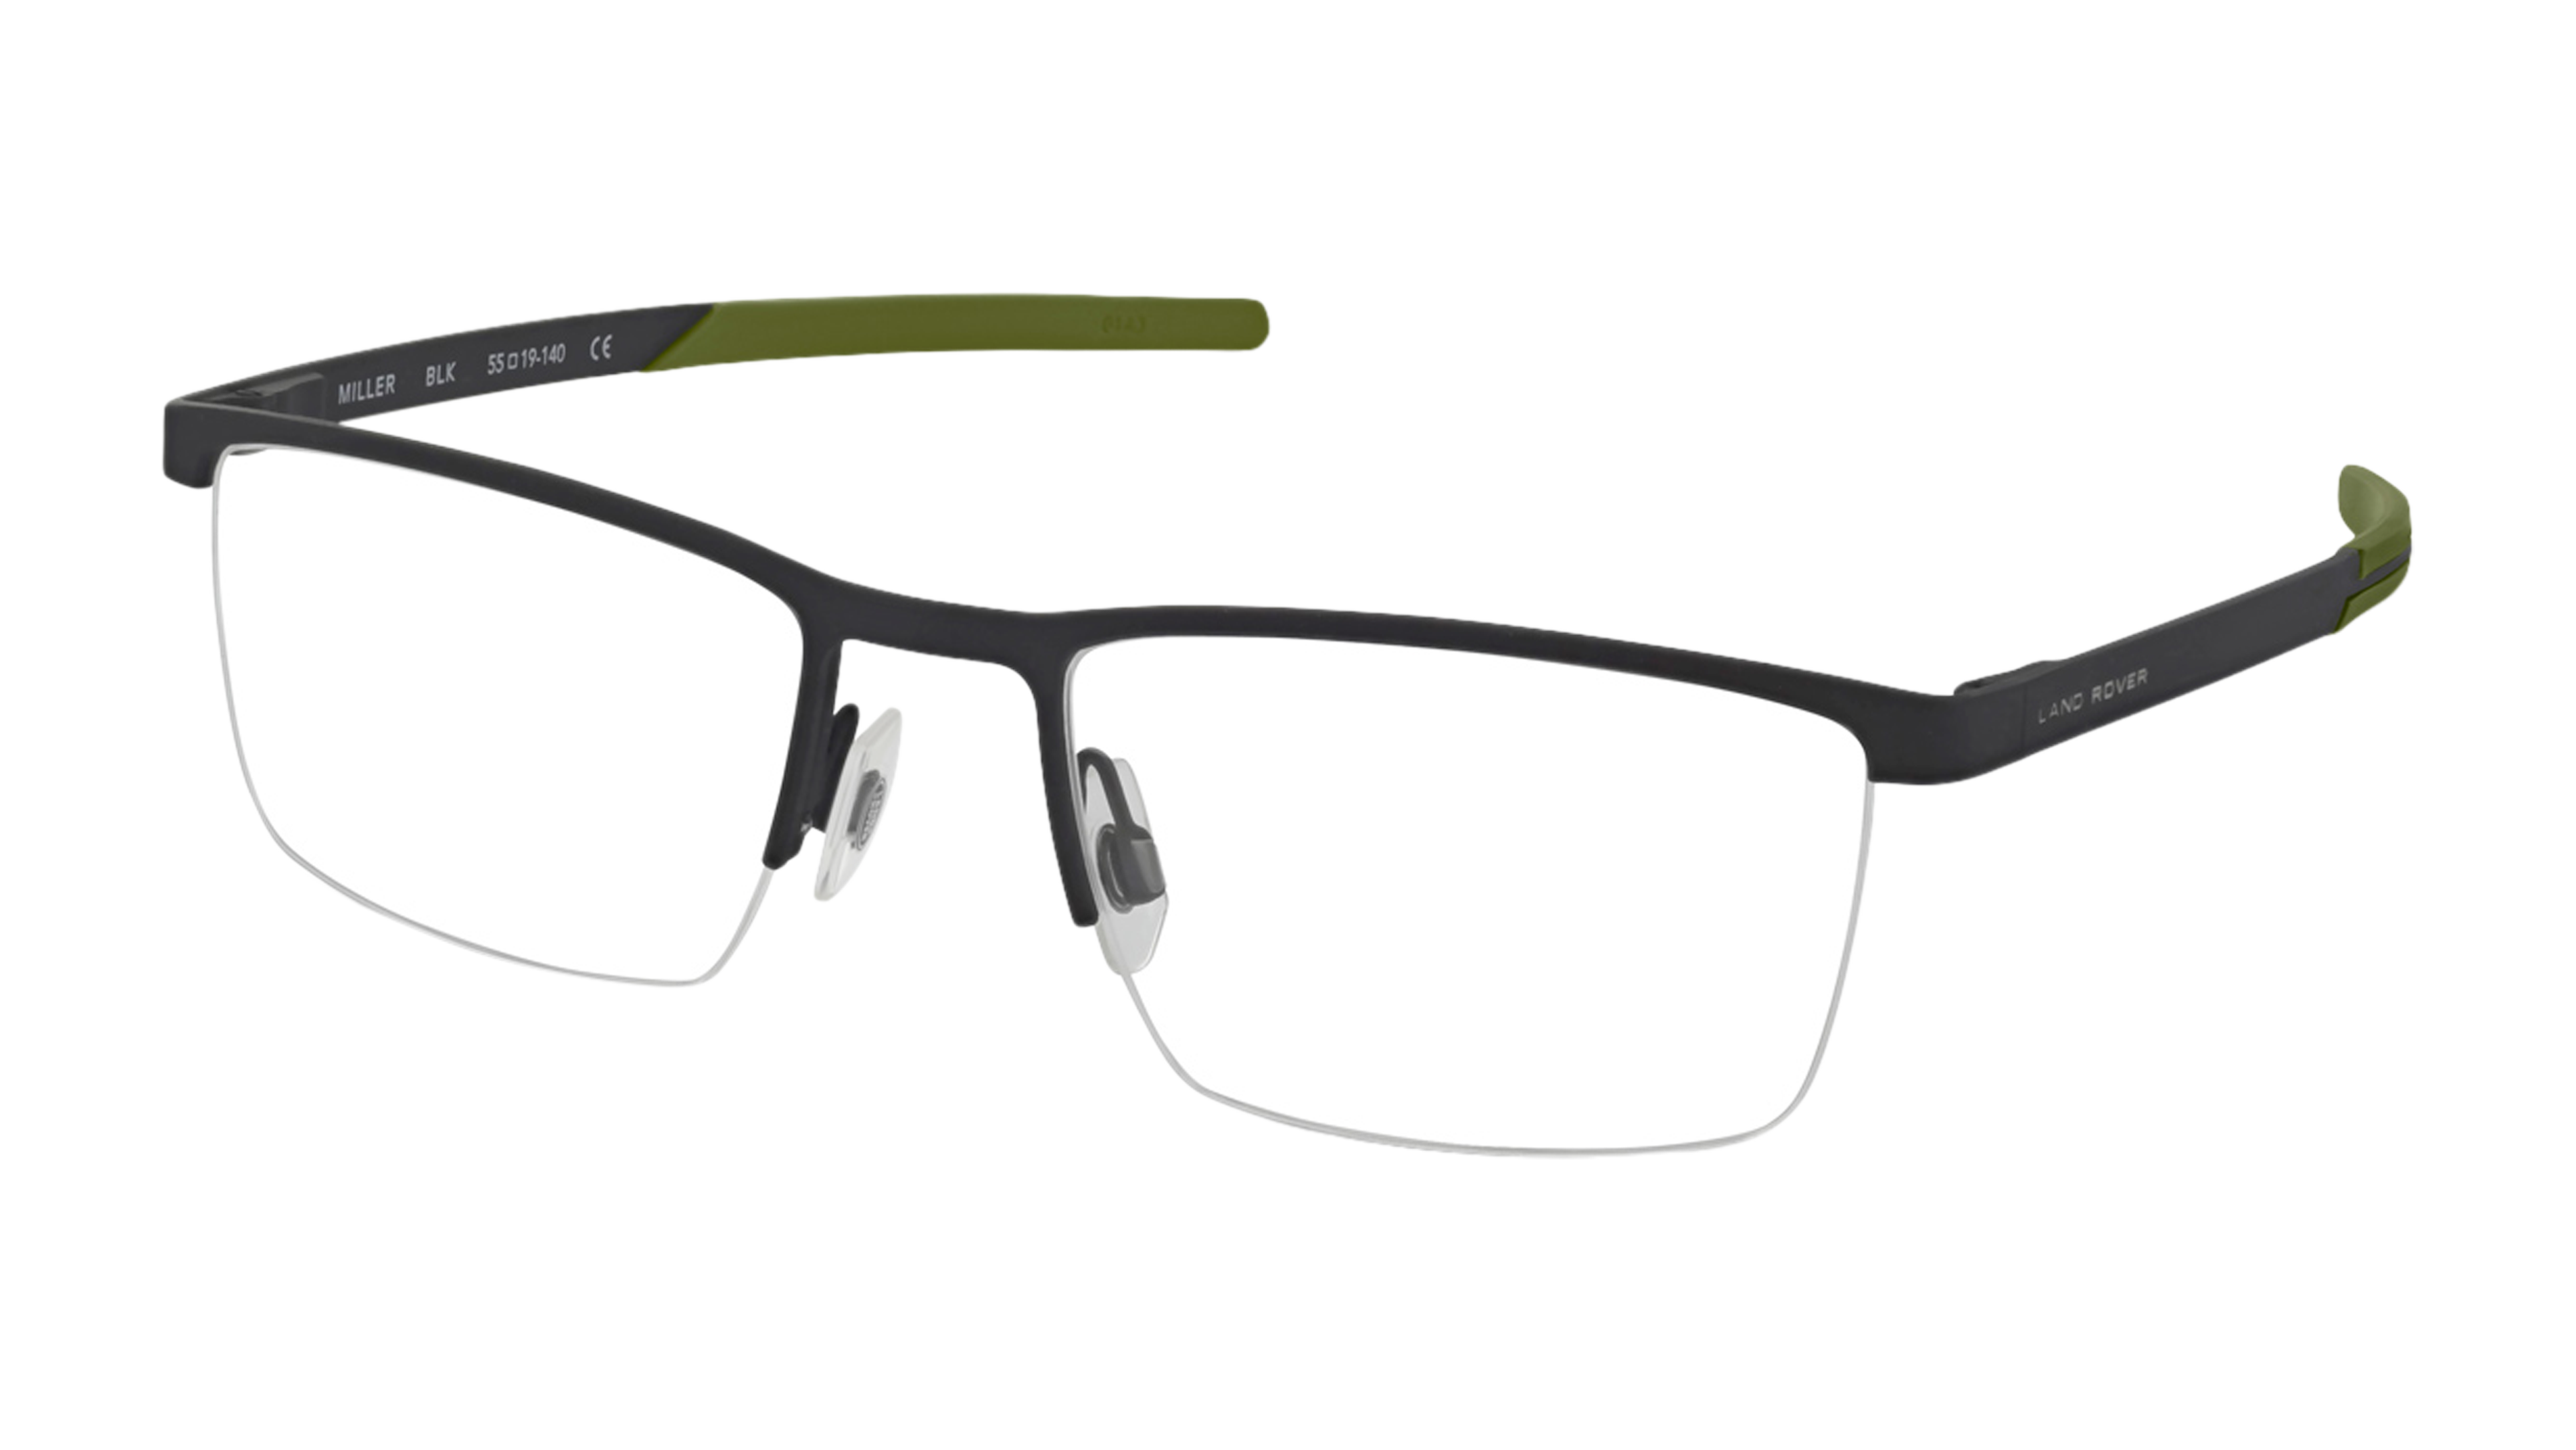 Angle_Left01 Land Rover Miller (BLK) Glasses Transparent / Black